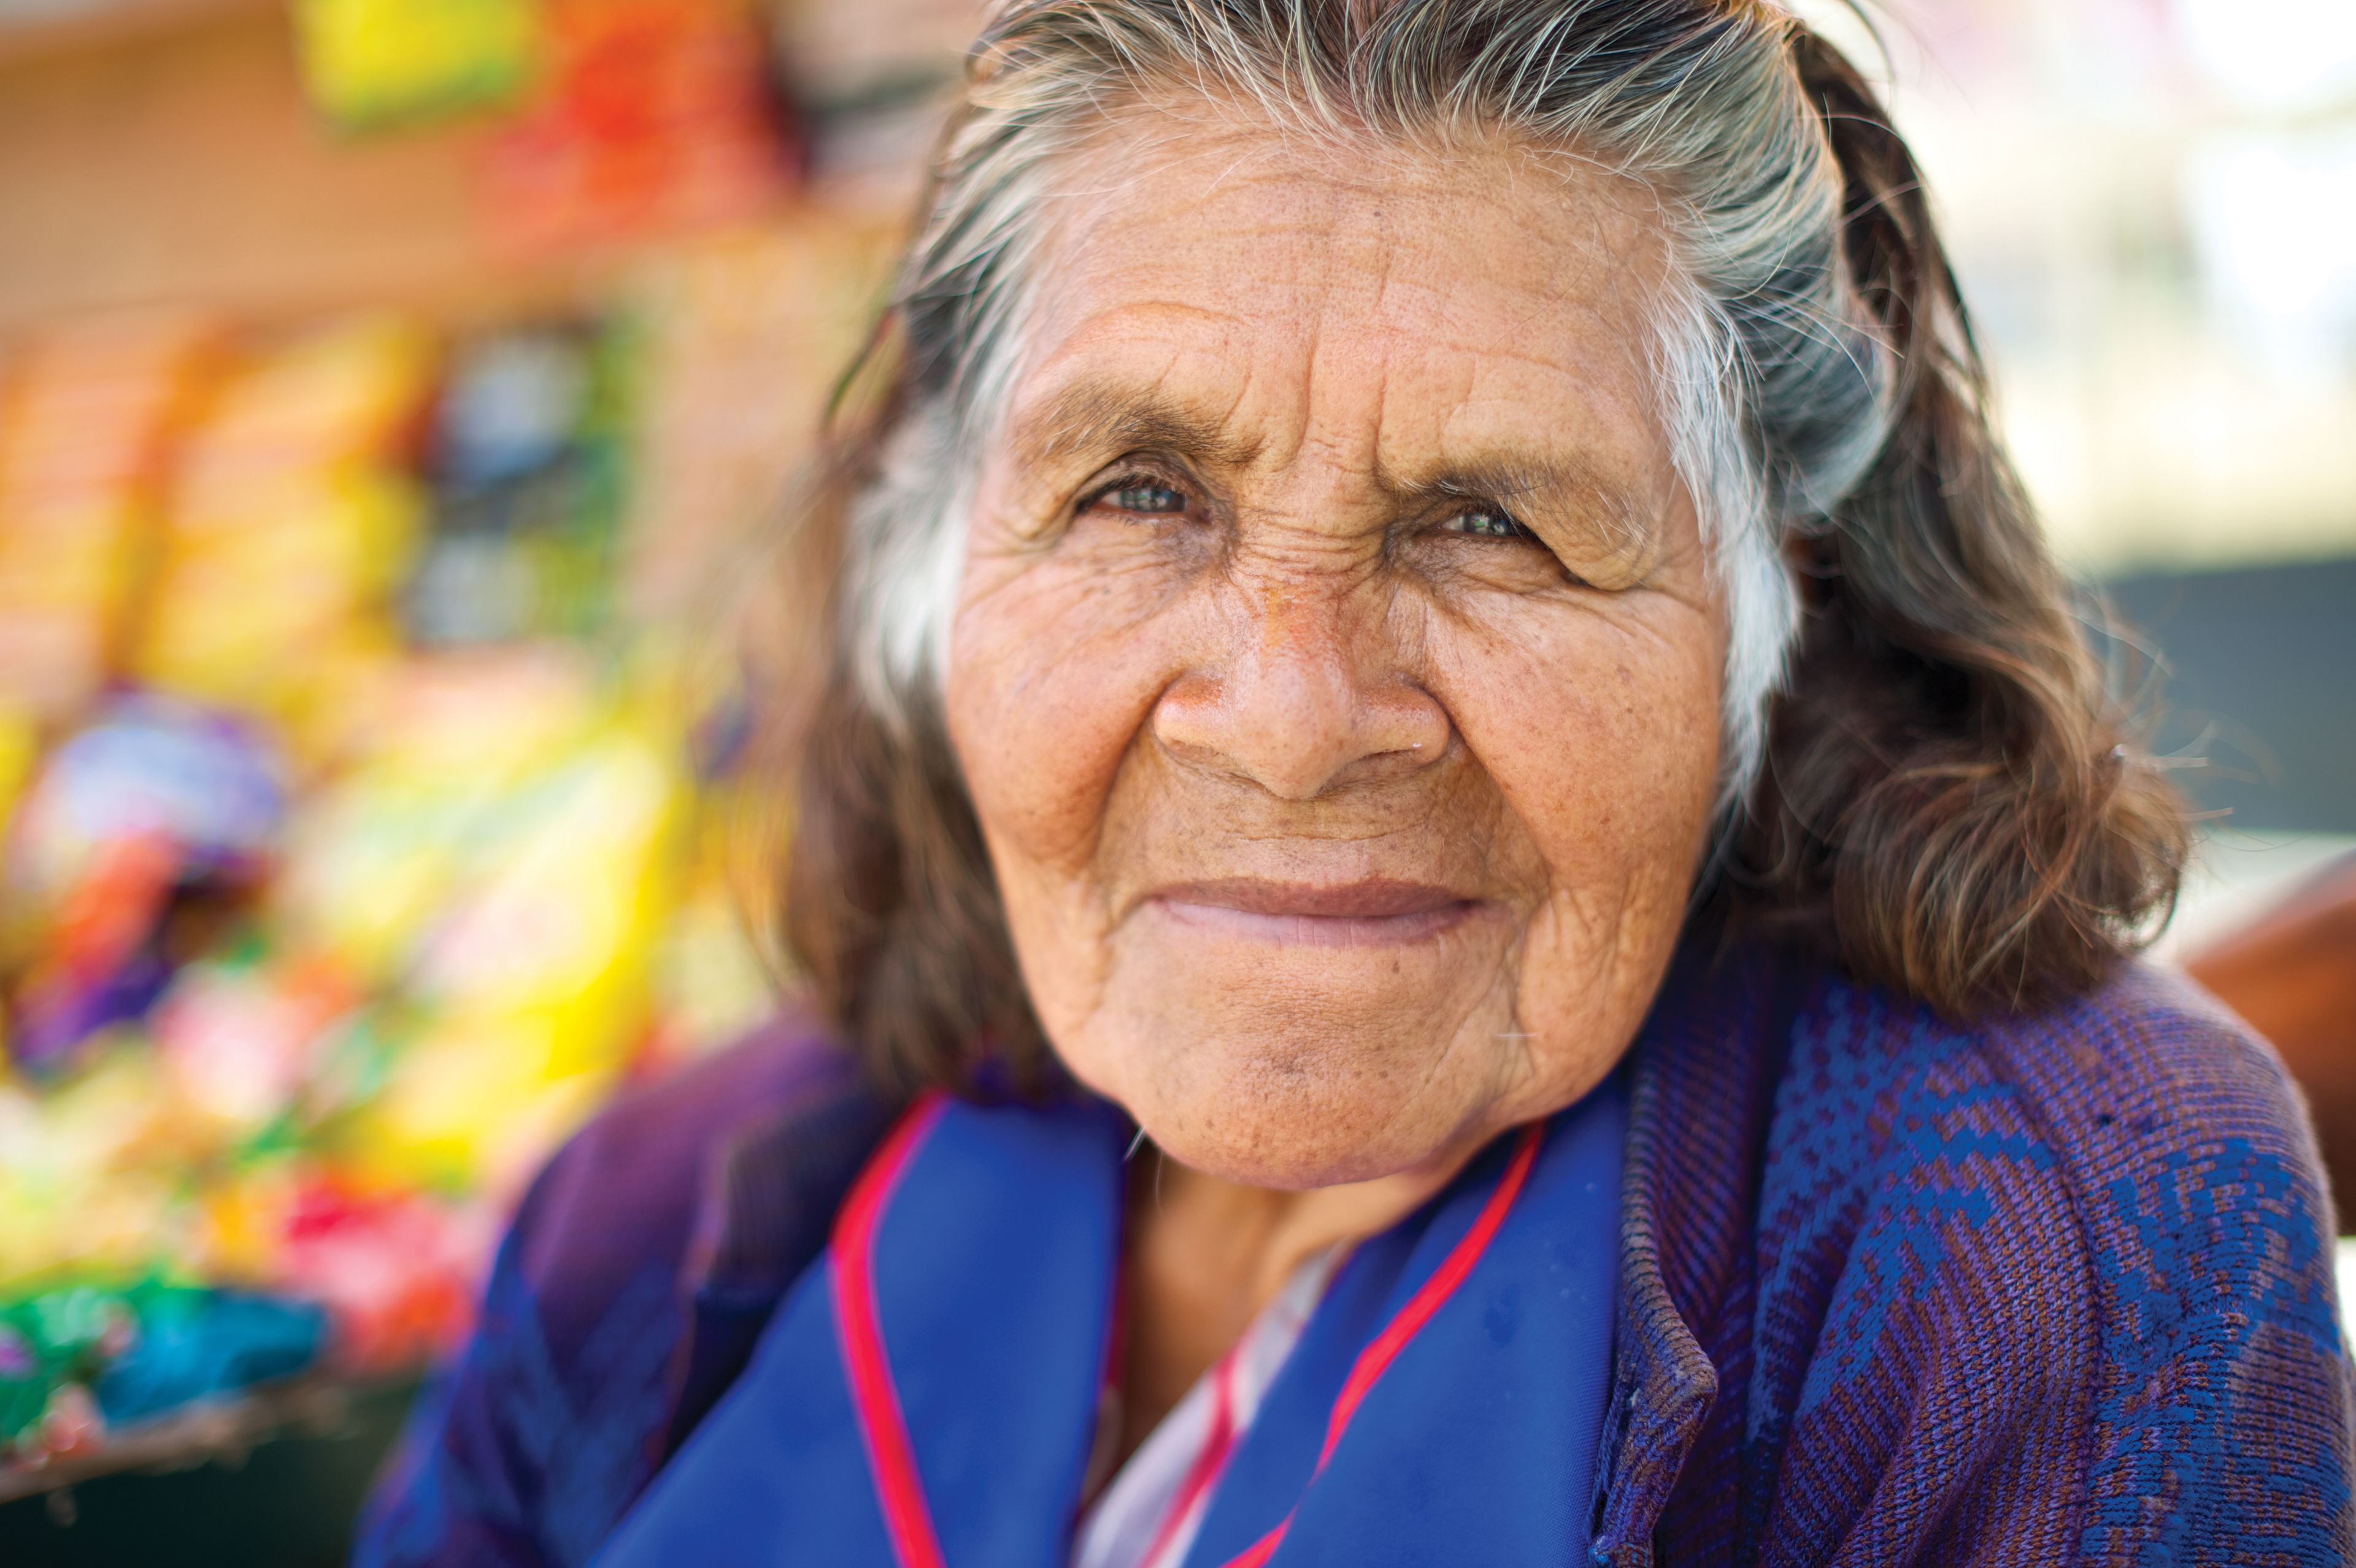 An informal portrait of an elderly woman in Peru.